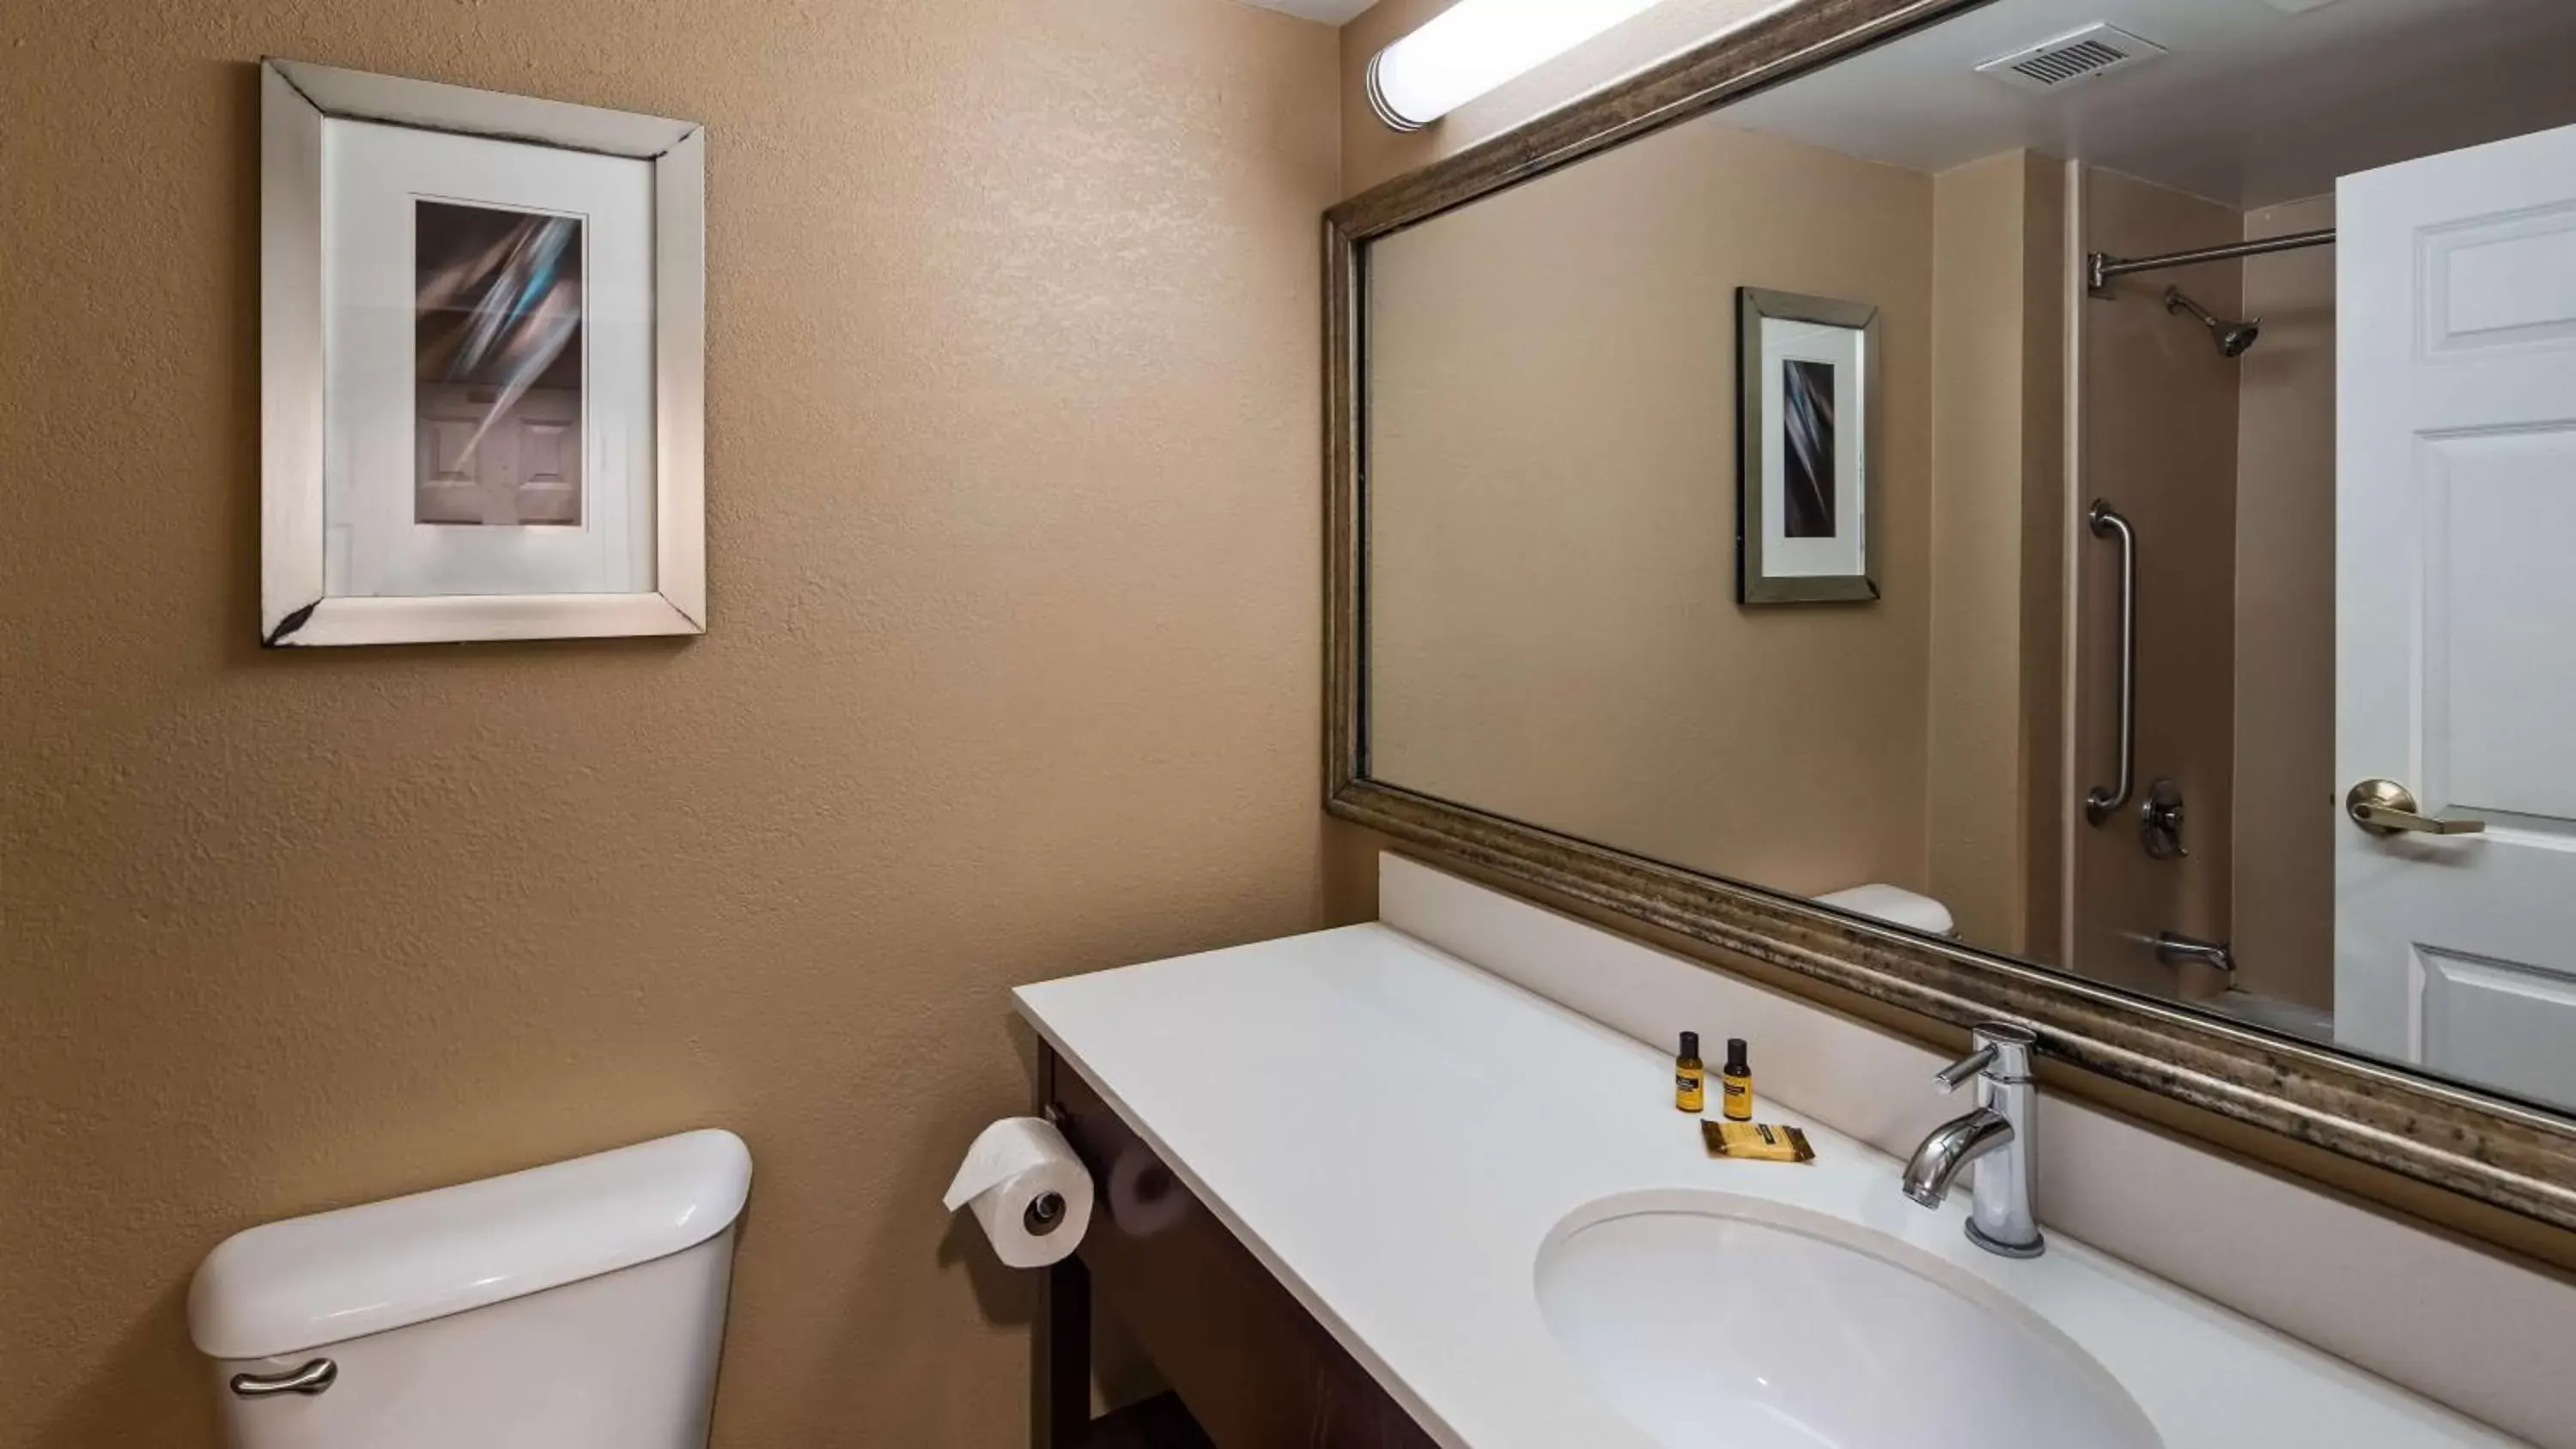 Photo of the whole room, Bathroom in Best Western Plus Harrisburg East Inn & Suites